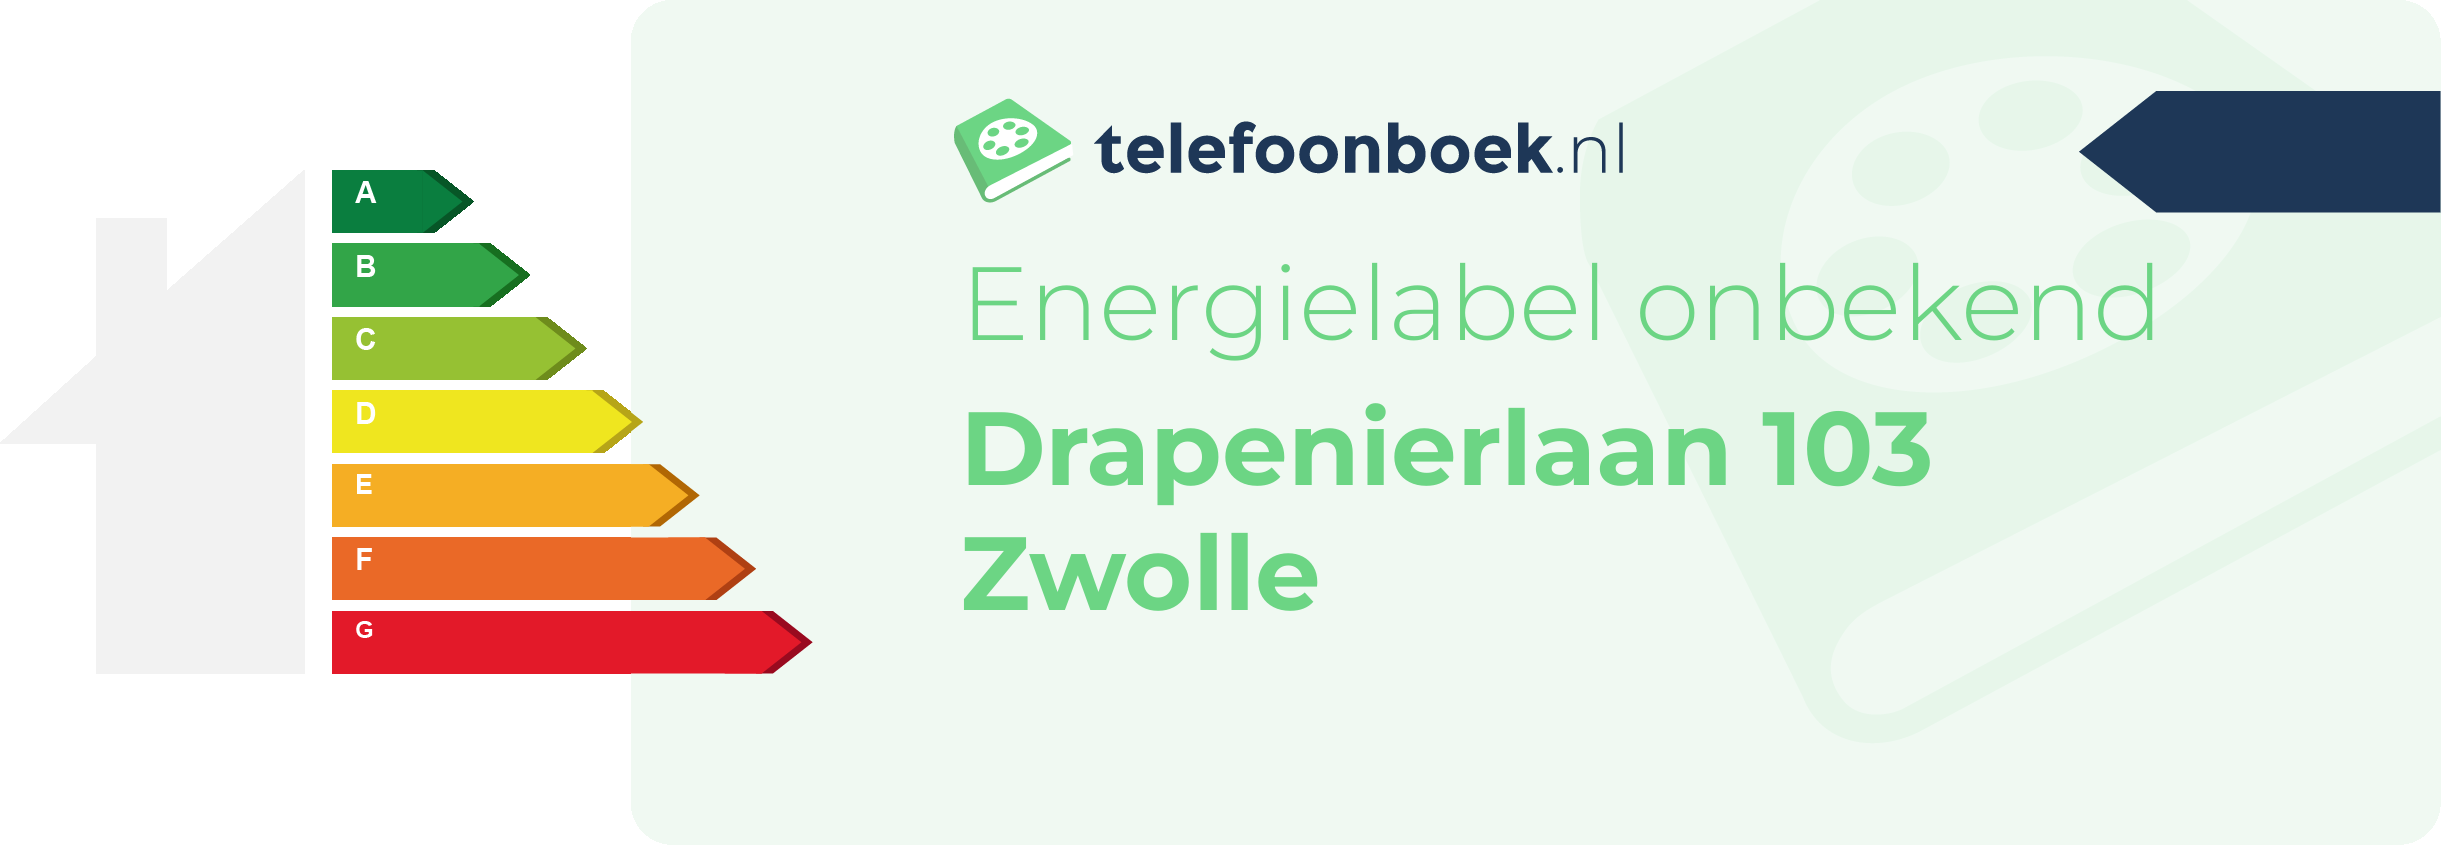 Energielabel Drapenierlaan 103 Zwolle